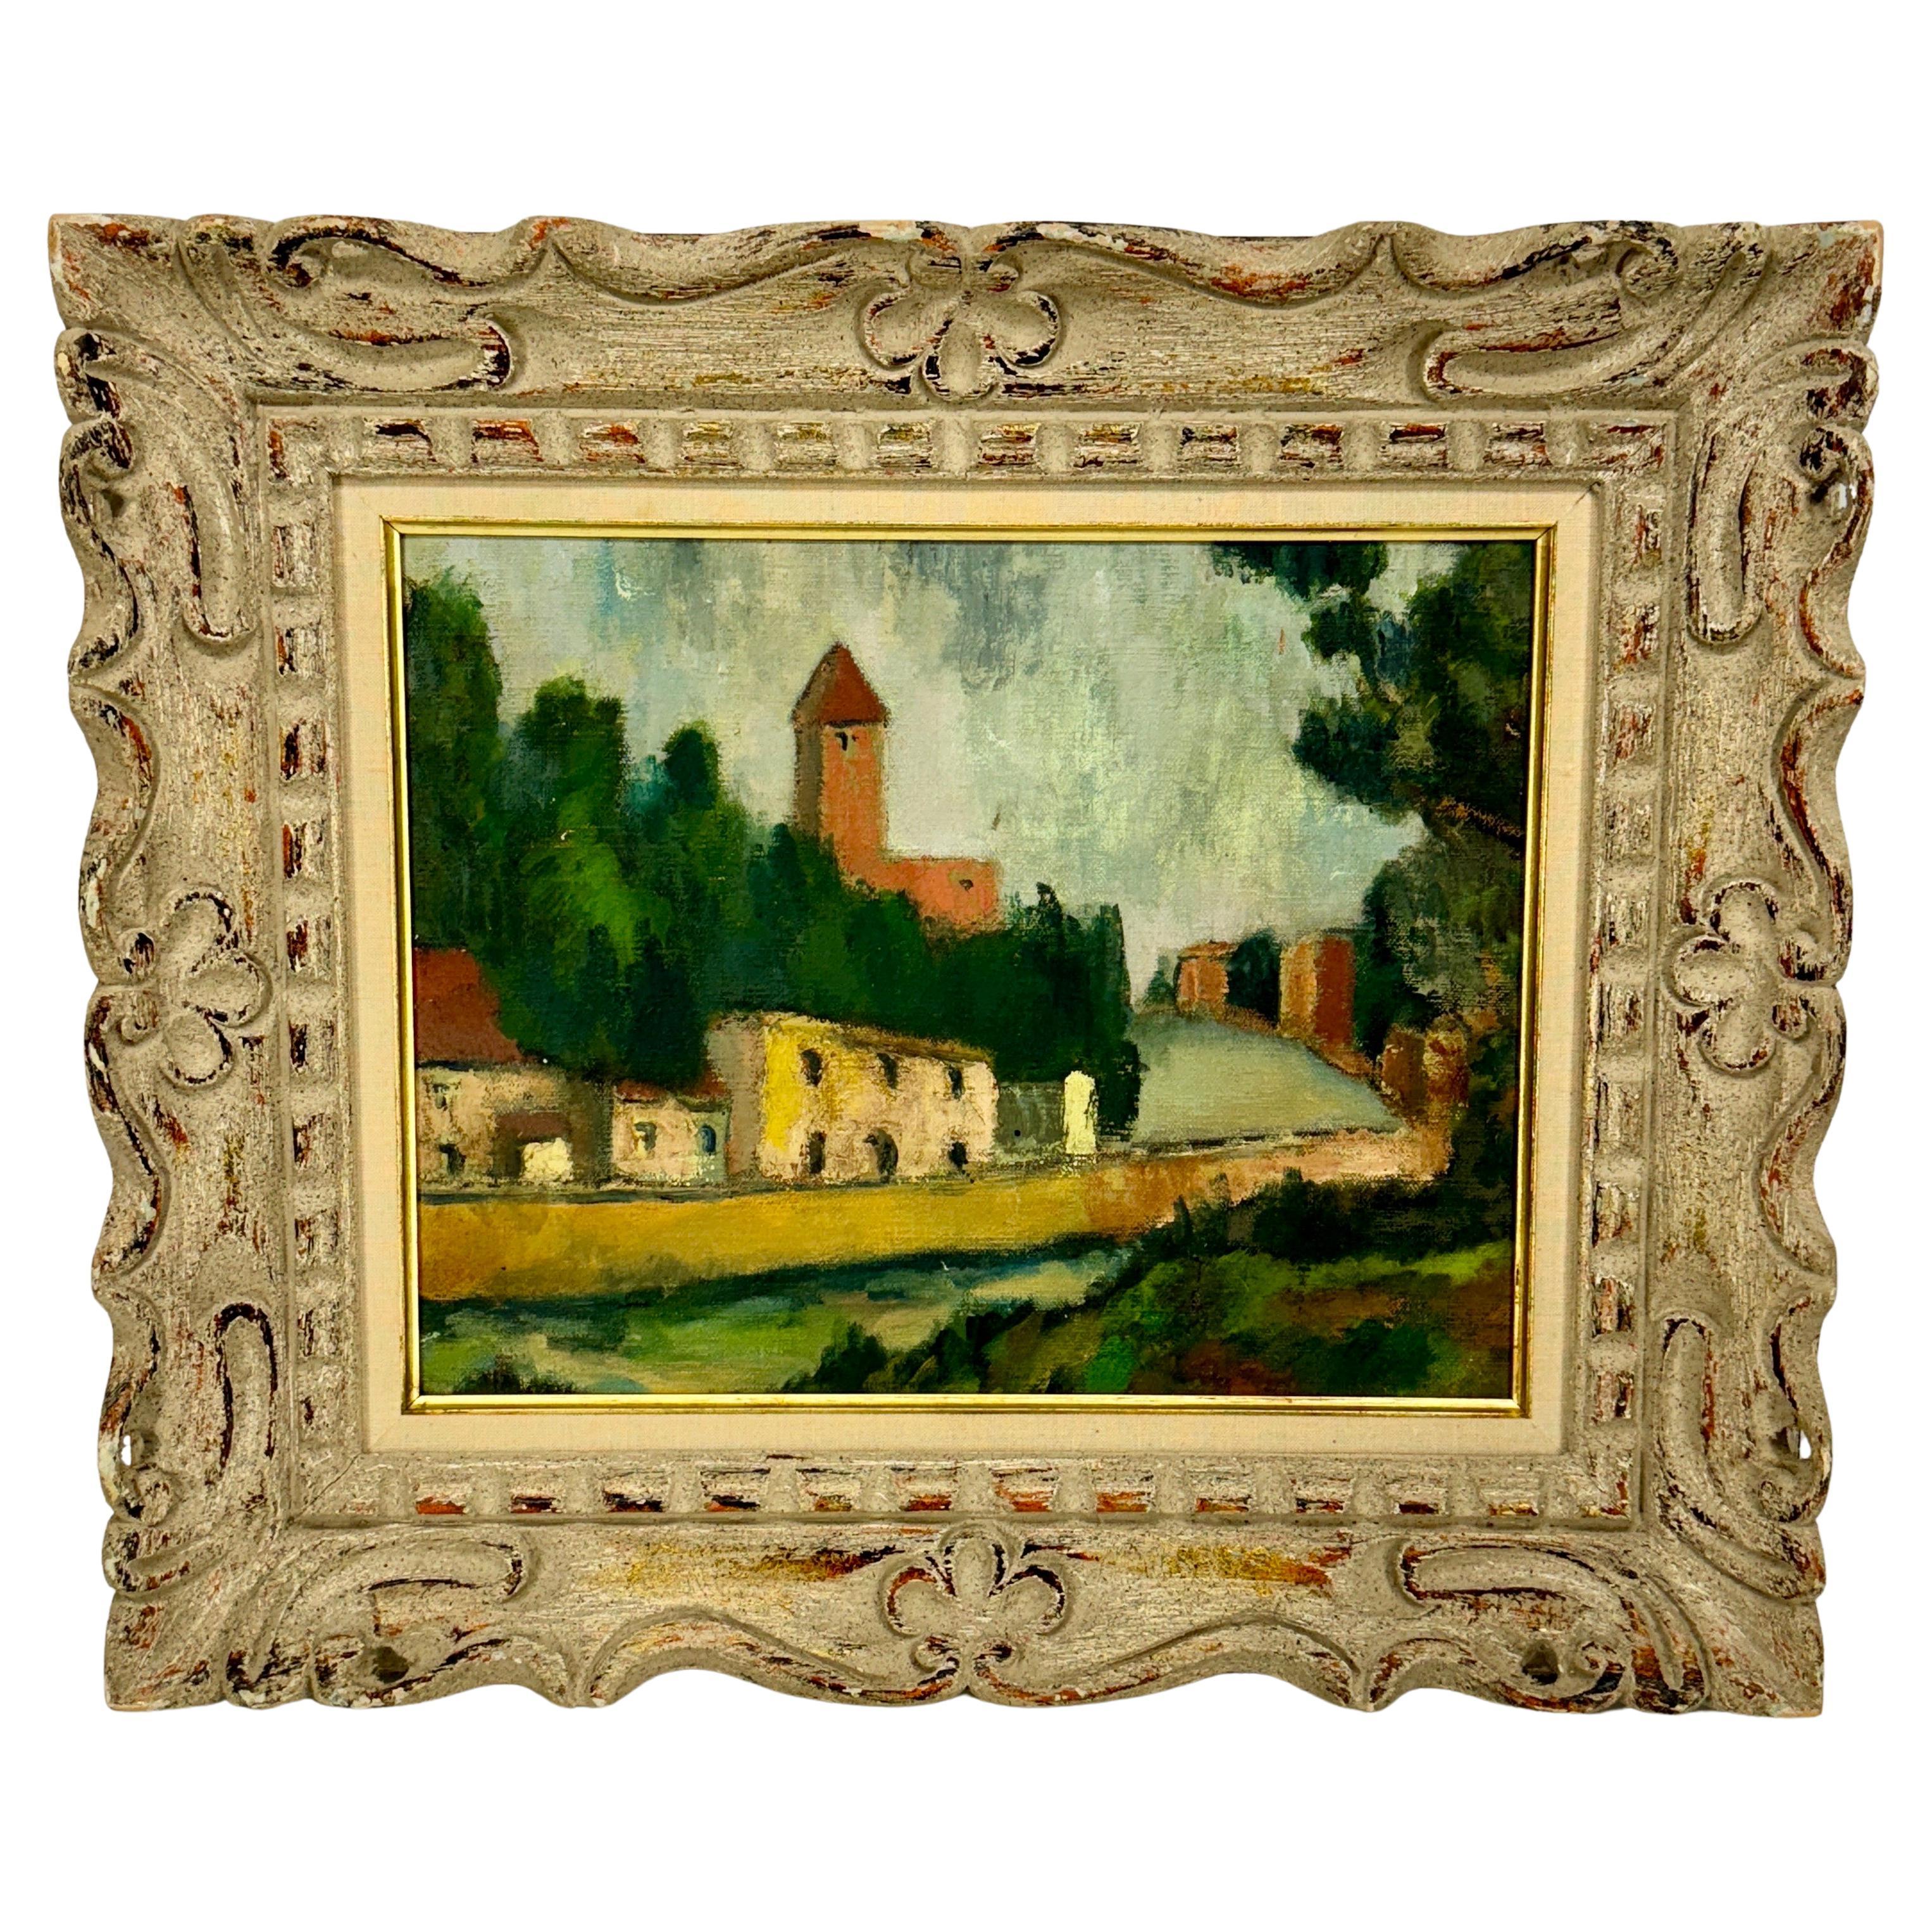 Paysage de village encadré avec maisons, France, années 1920

Une belle peinture parisienne sur toile représentant un paysage de village paisible avec une rangée de maisons sur une rue présentant une scène le long de la Seine. Le tableau est contenu